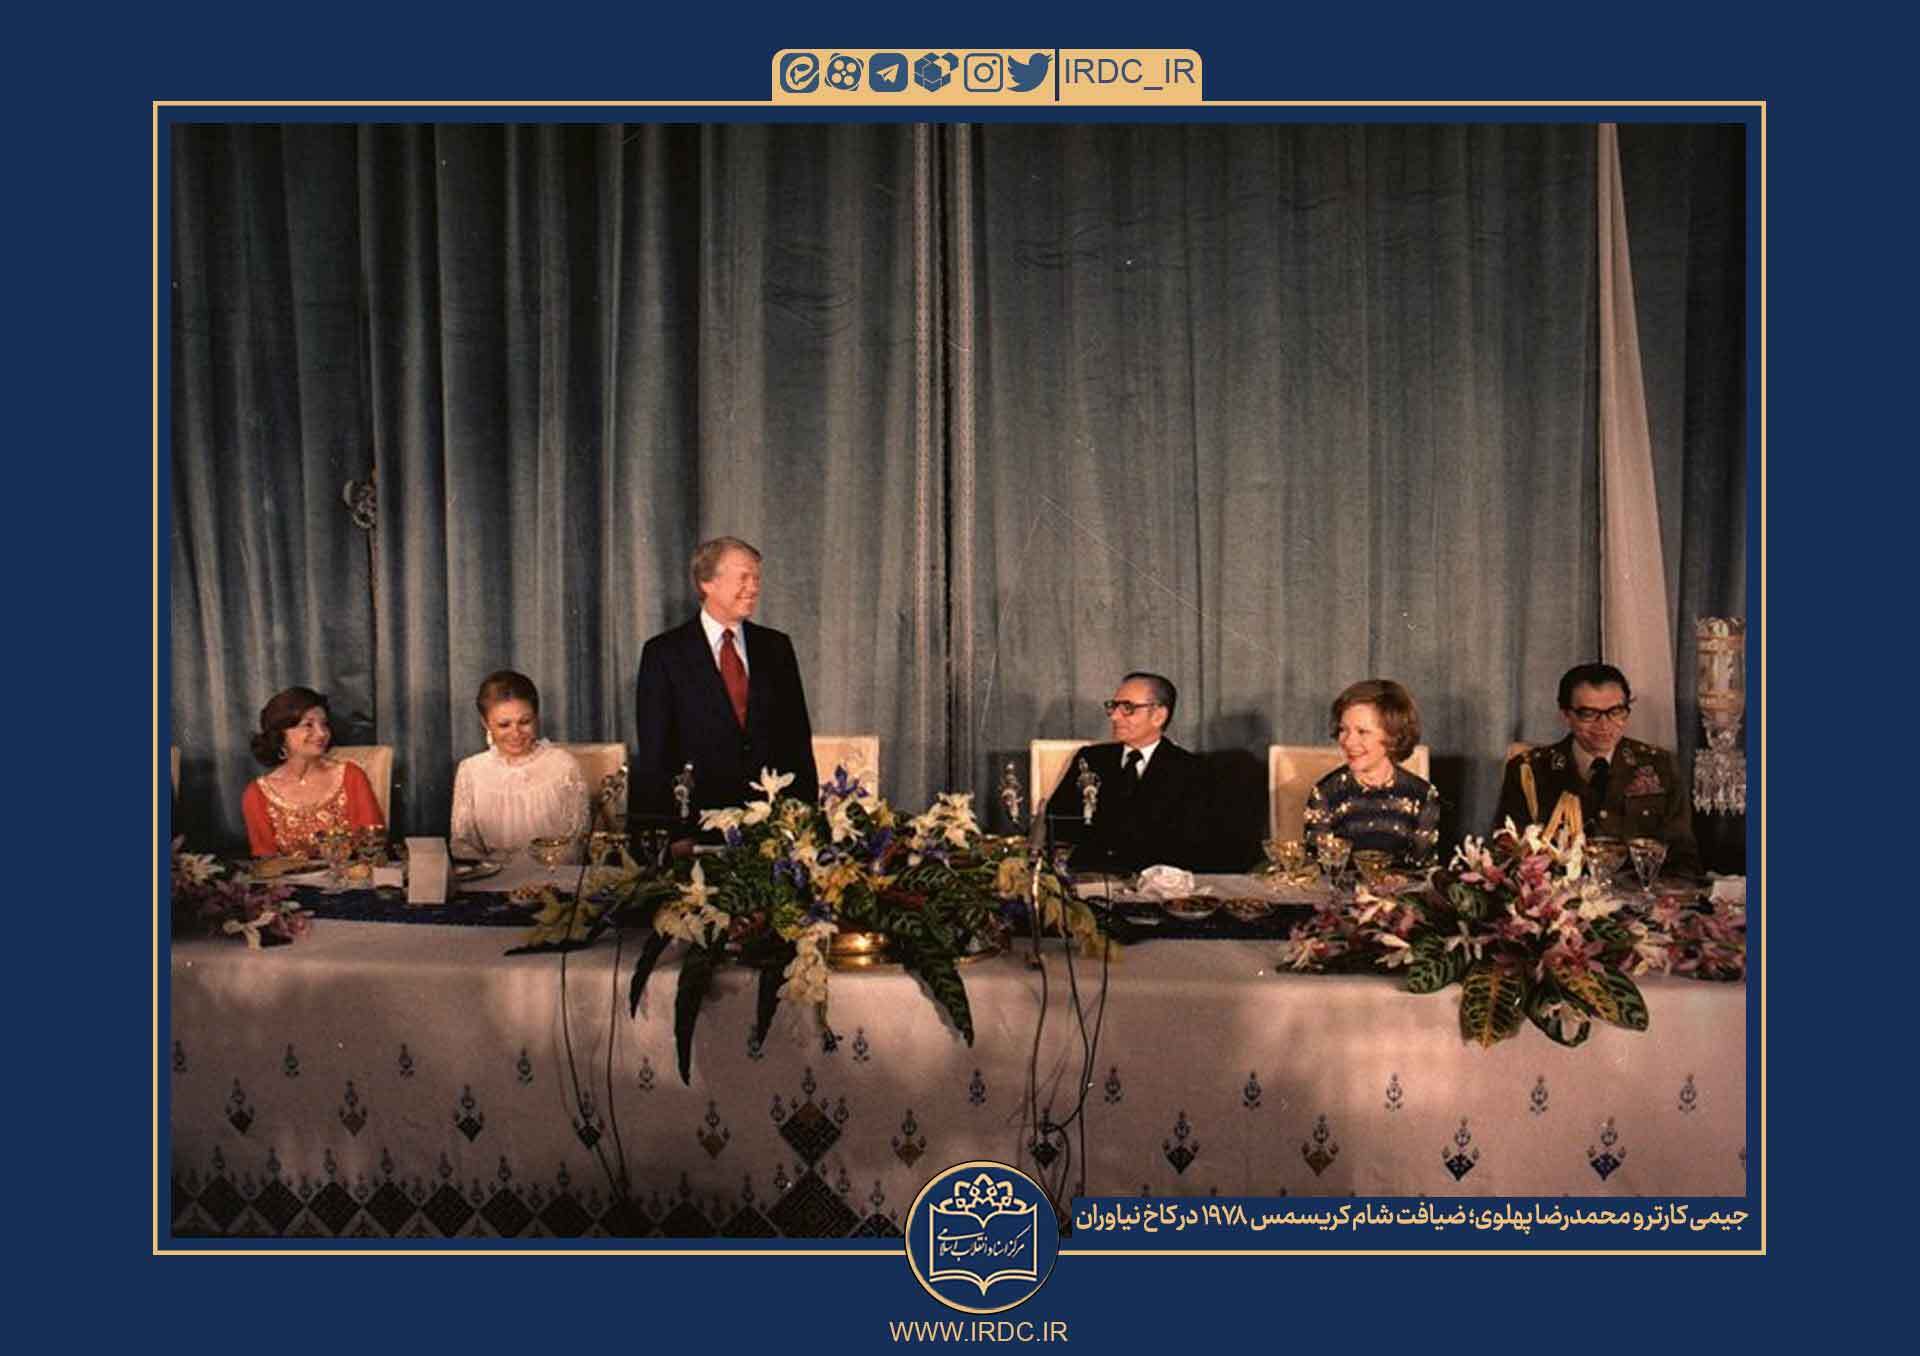 جیمی کارتر و محمدرضا پهلوی در کاخ نیاوران